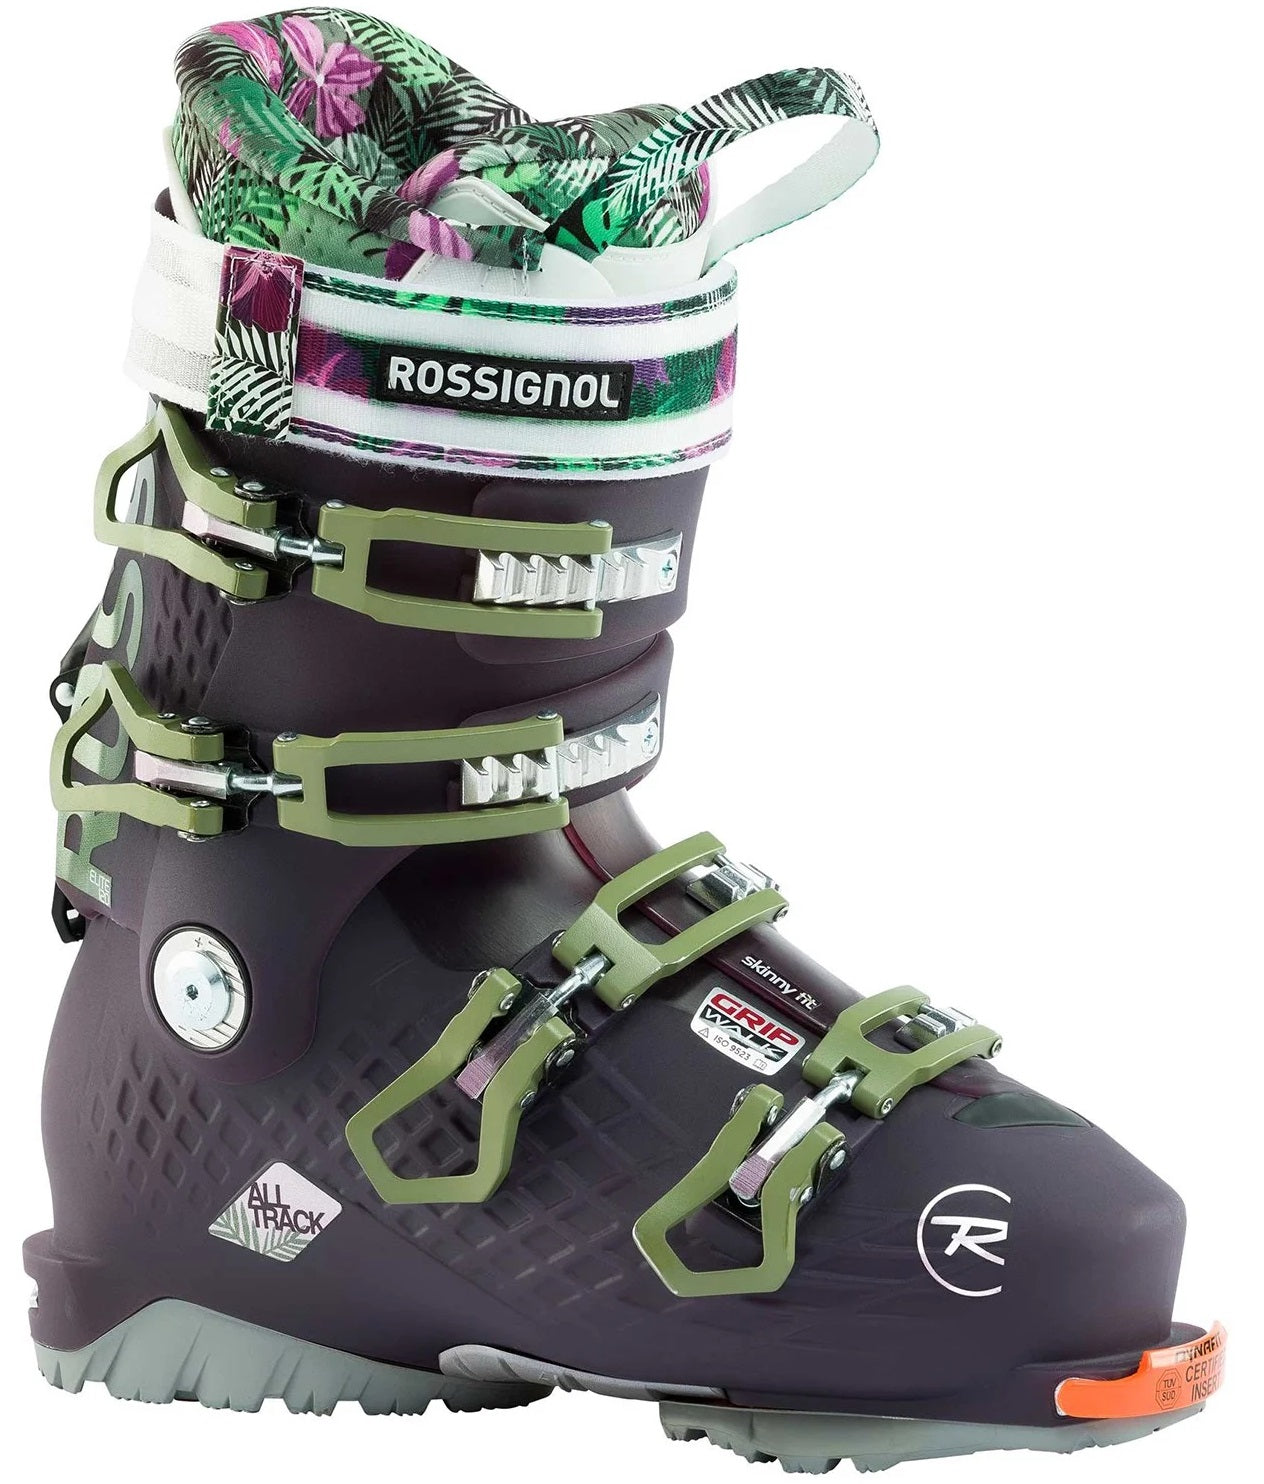 Boot-Ski - Alltrack Elite 120 W 21